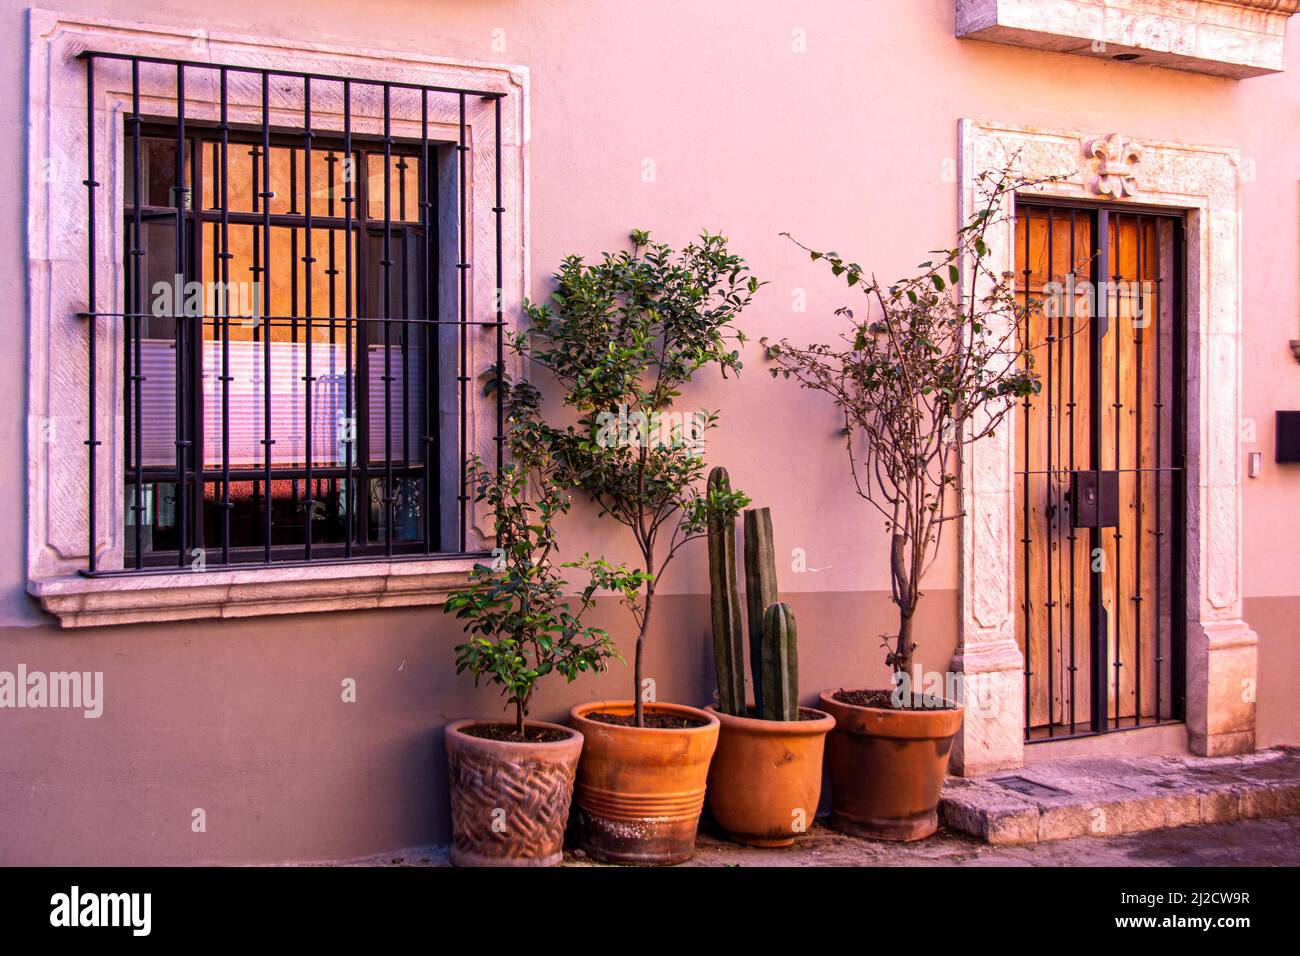 La façade d'une maison décorée de plantes et de barres en fer forgé. San Miguel de Allende, Guanajuato, Mexique. Banque D'Images